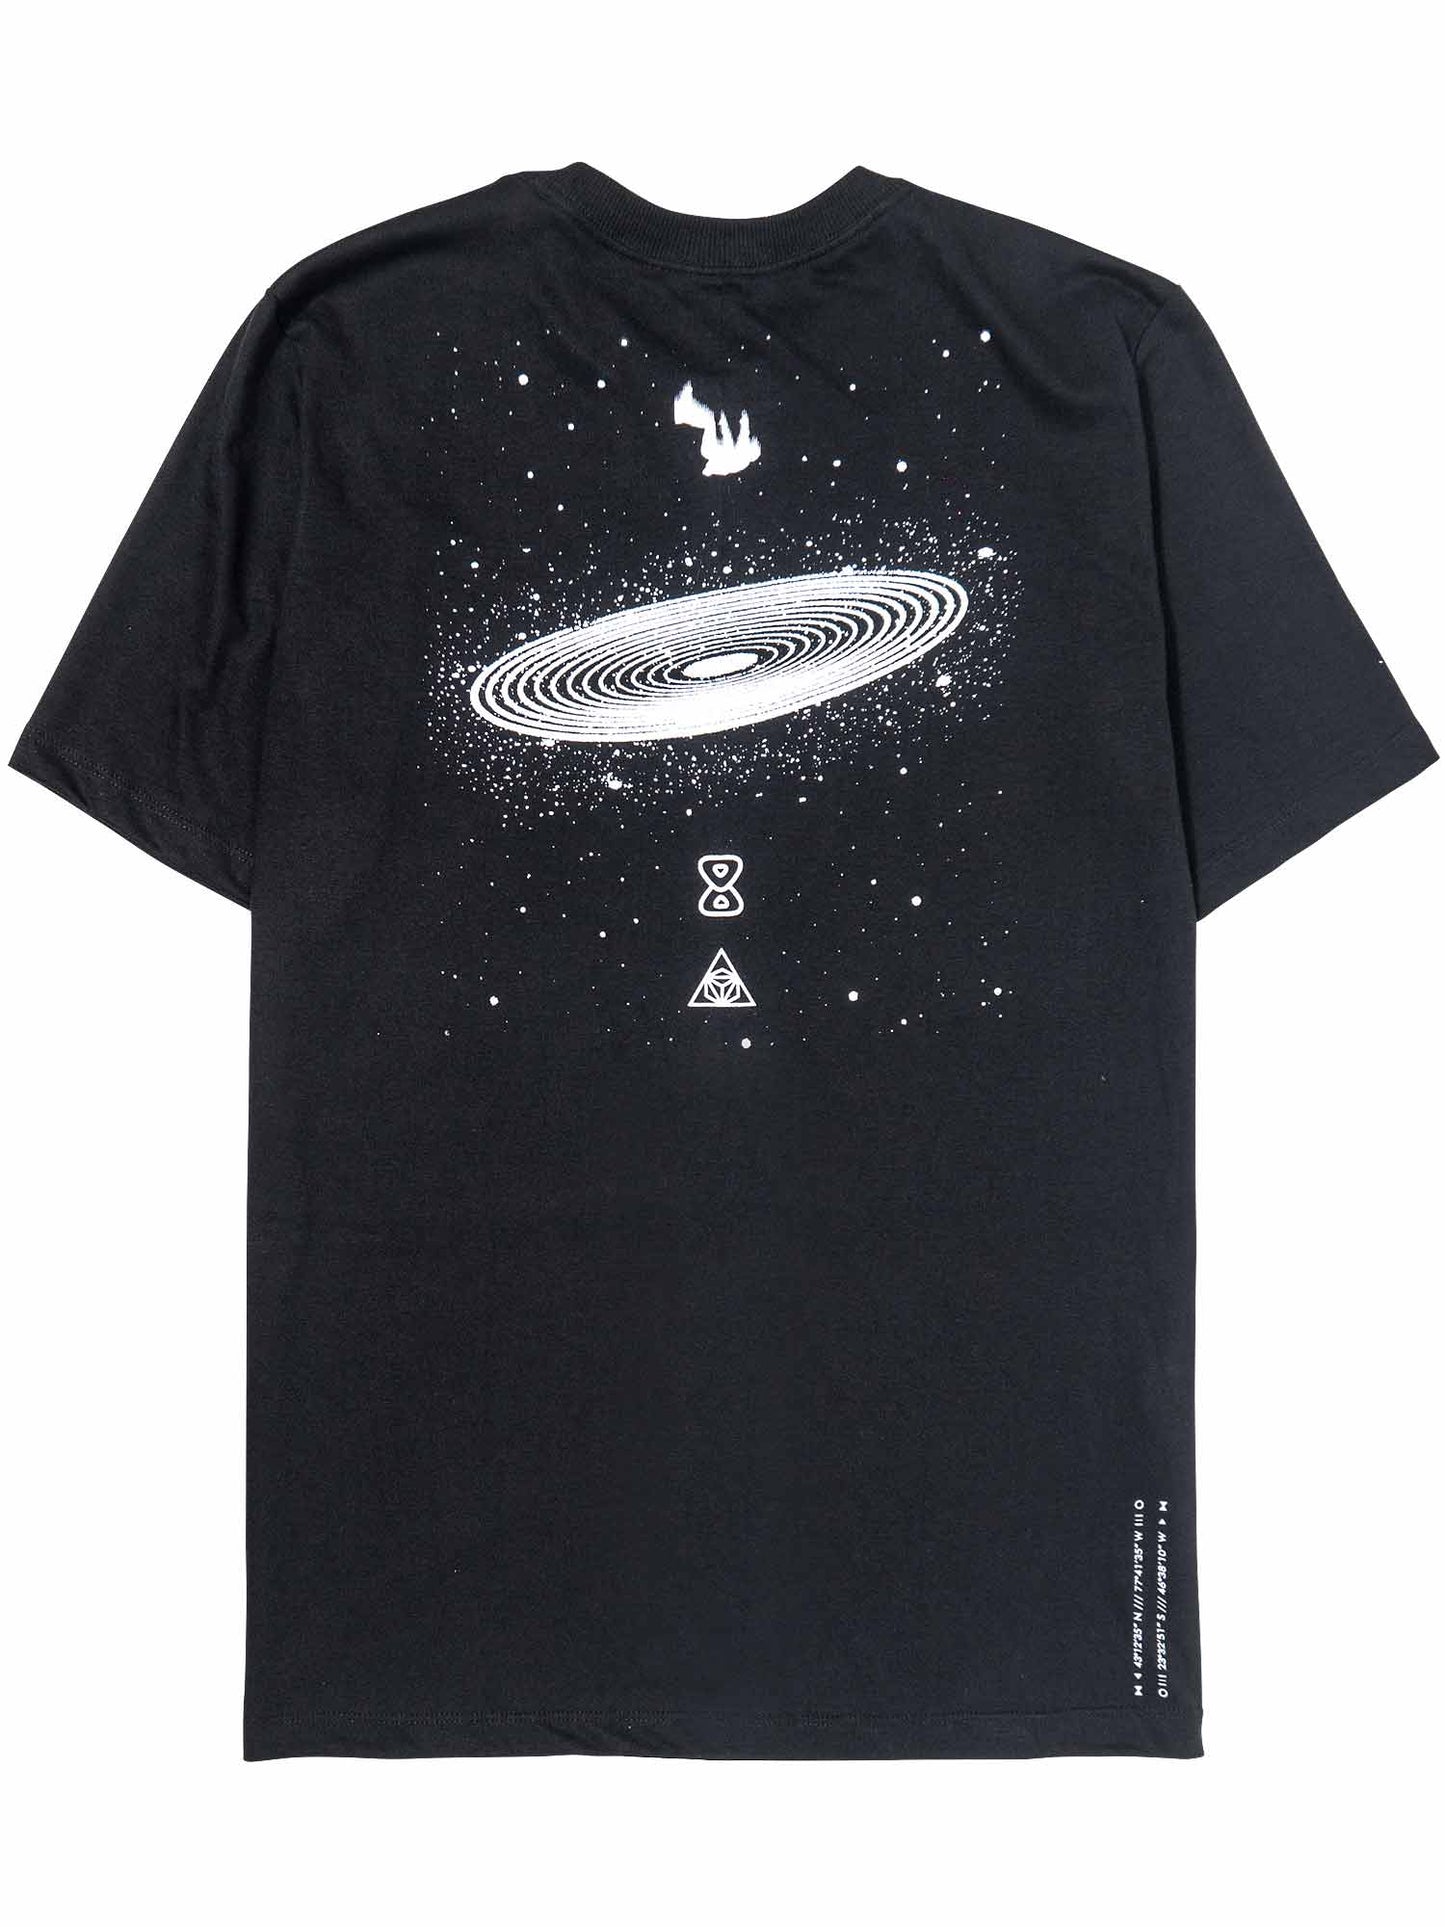 Camiseta-Future-Mycrocosmos-Preta-Costas